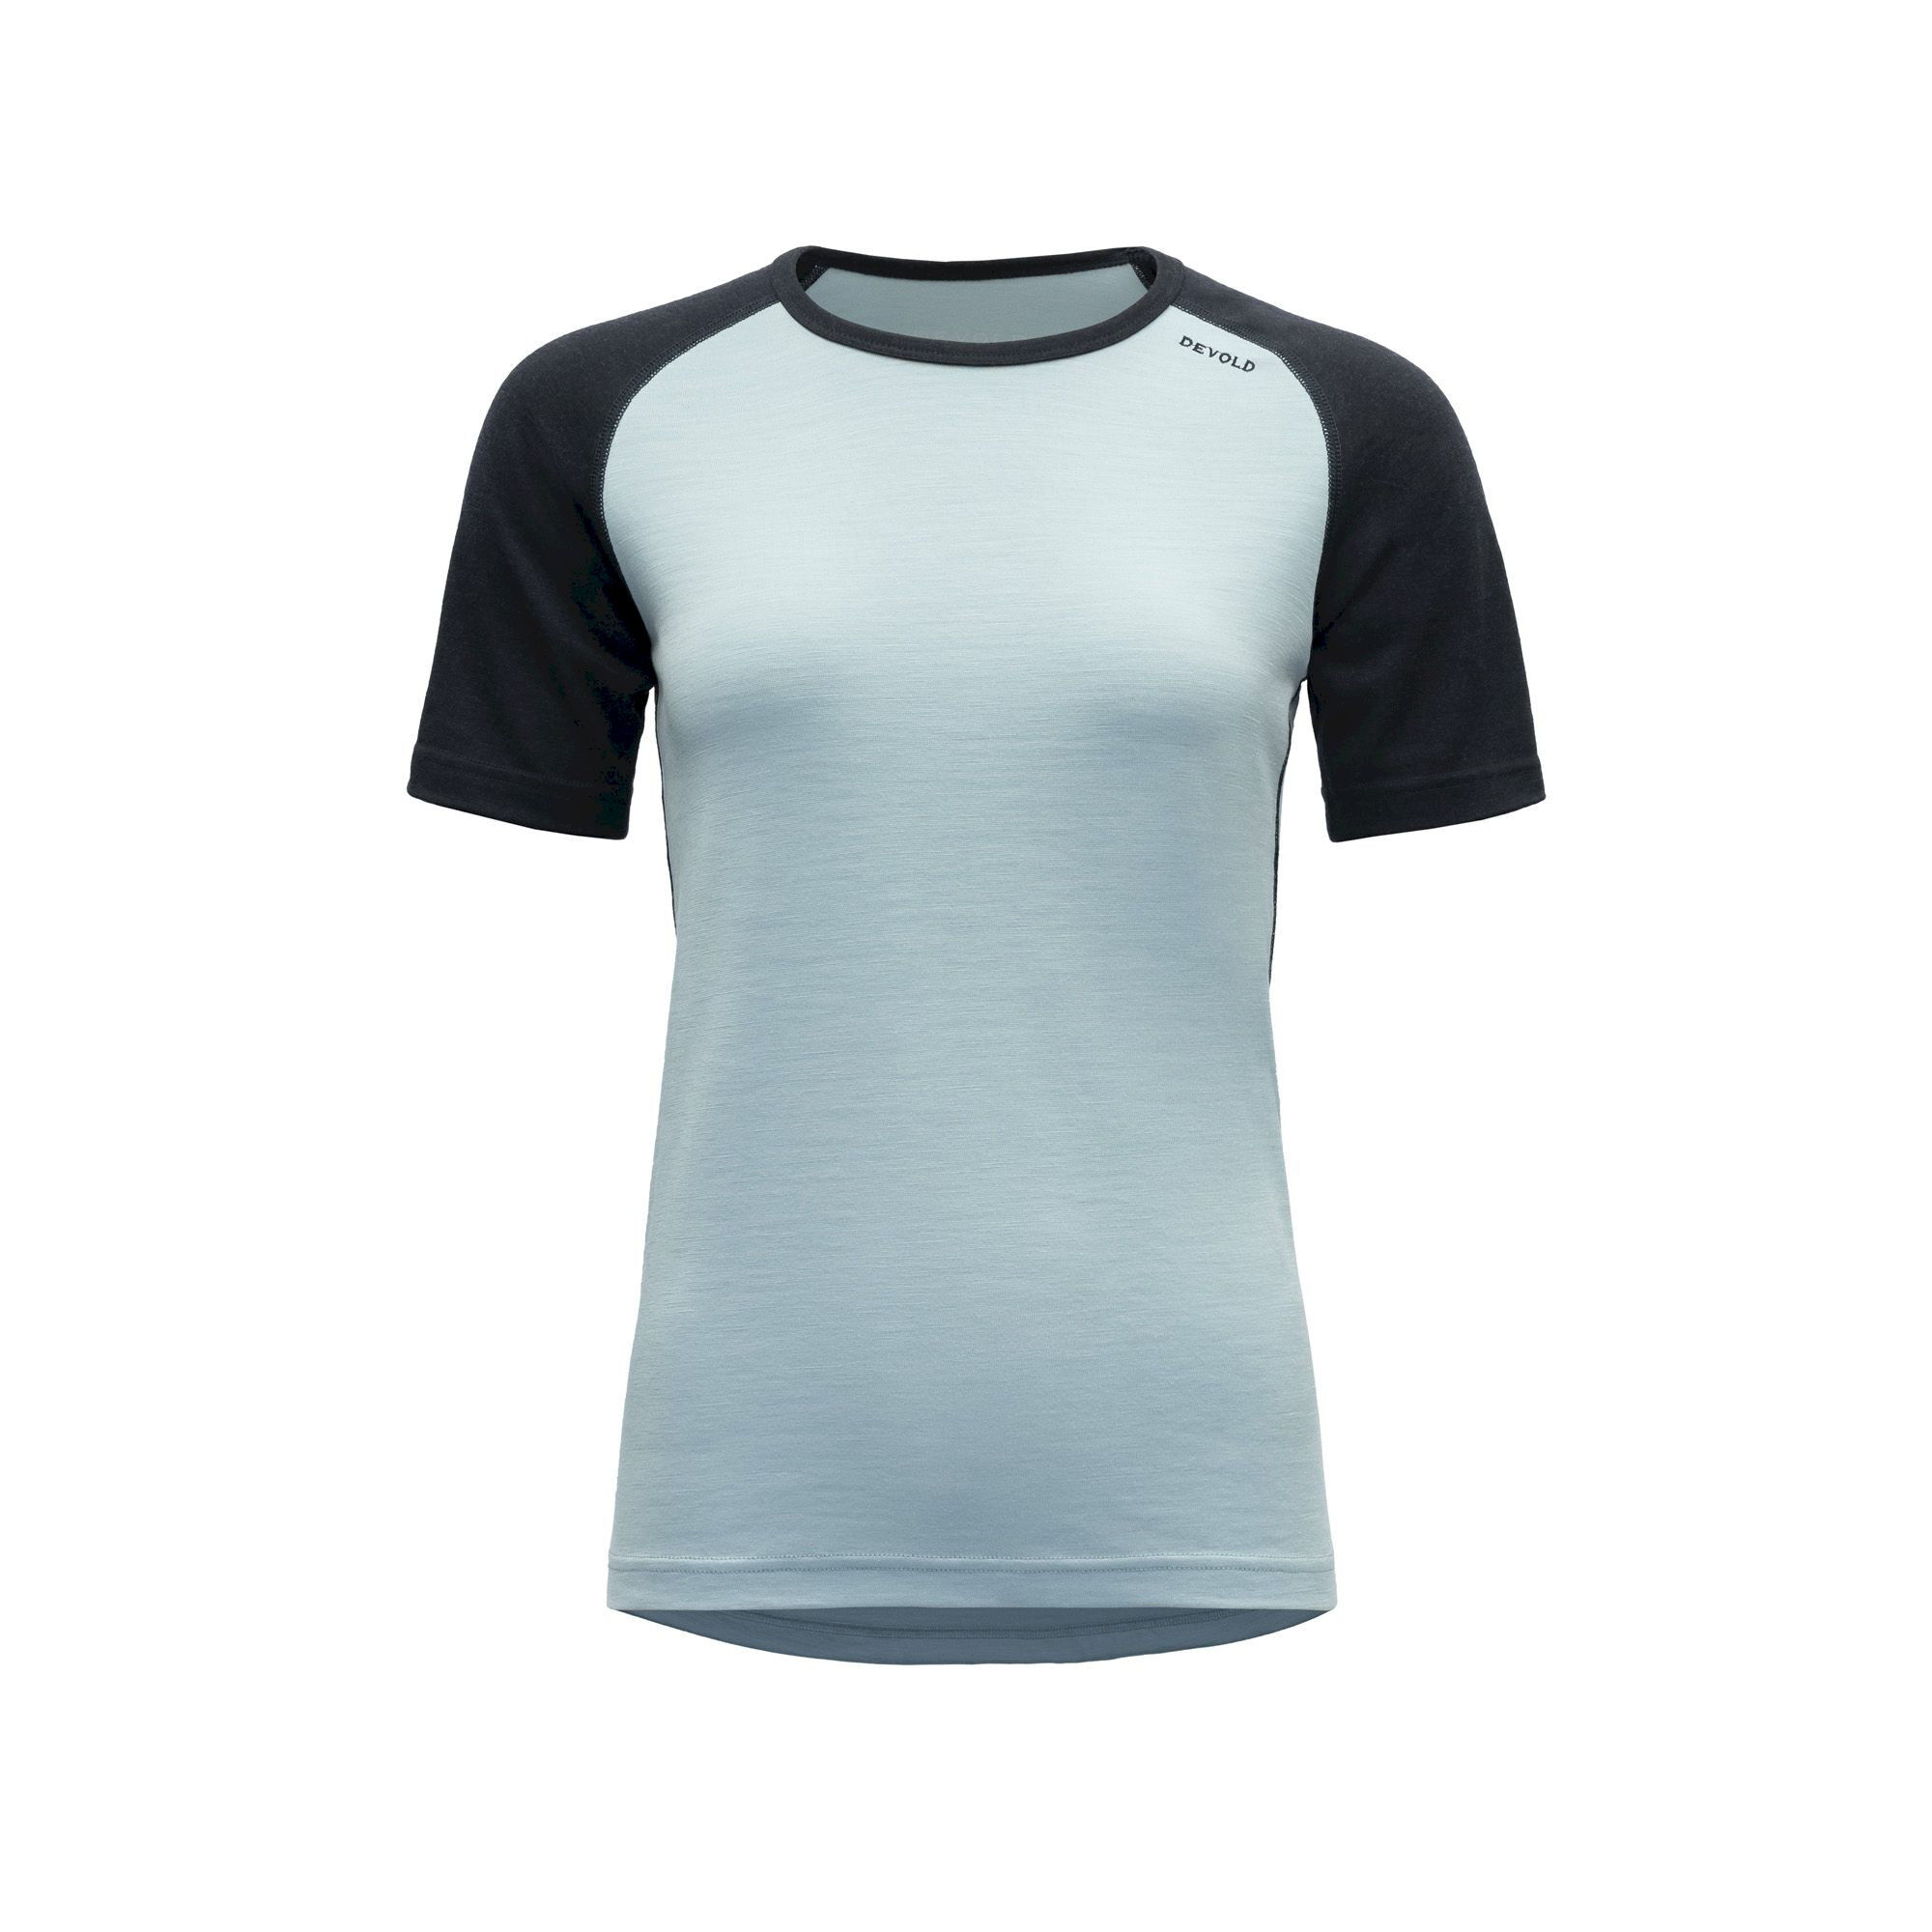 Devold Jakta Merino 200 T-Shirt - Merino shirt - Women's | Hardloop